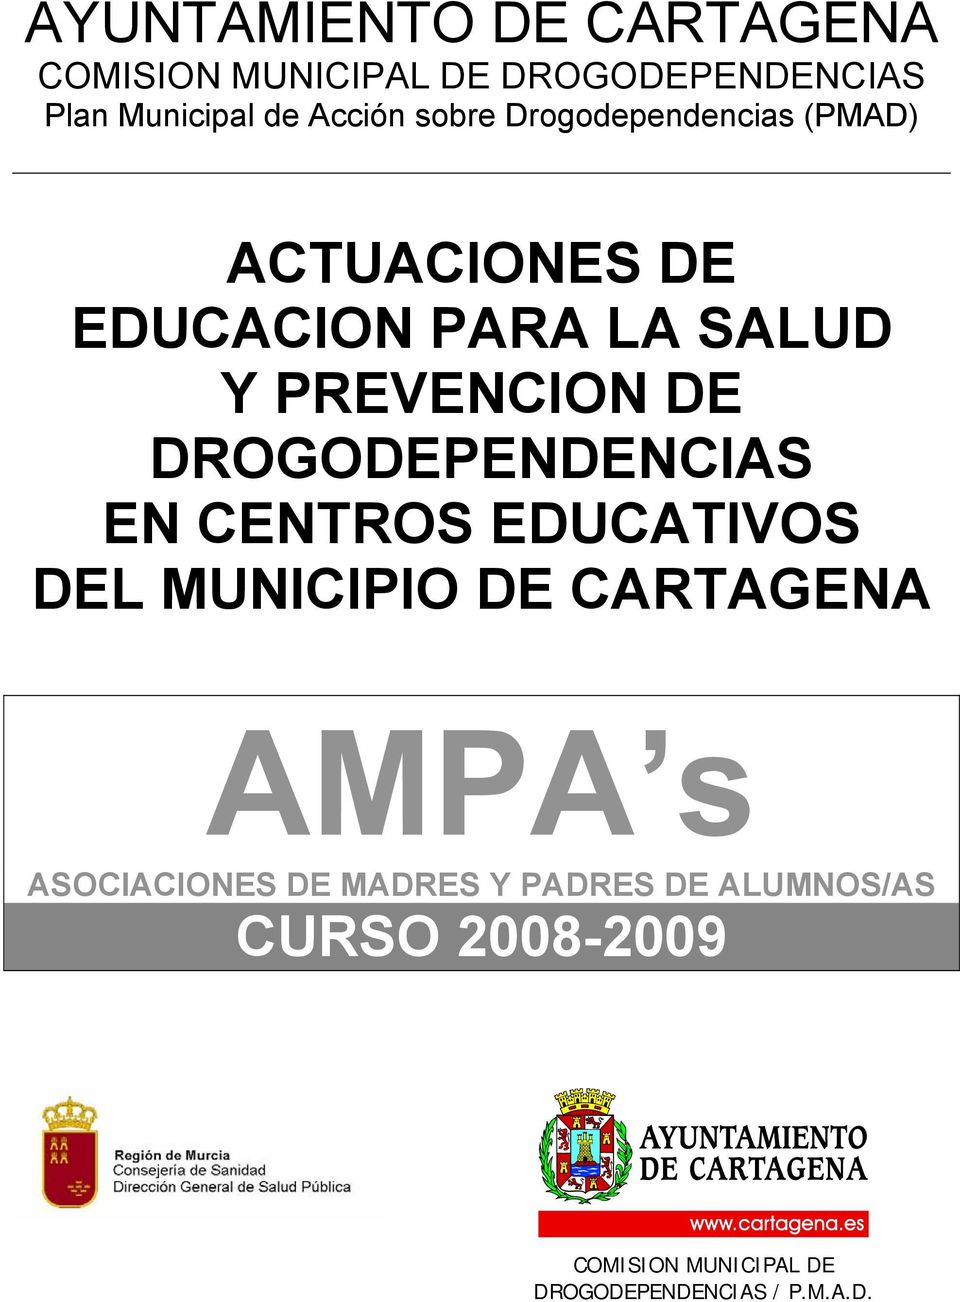 DROGODEPENDENCIAS EN CENTROS EDUCATIVOS DEL MUNICIPIO DE CARTAGENA AMPA s ASOCIACIONES DE